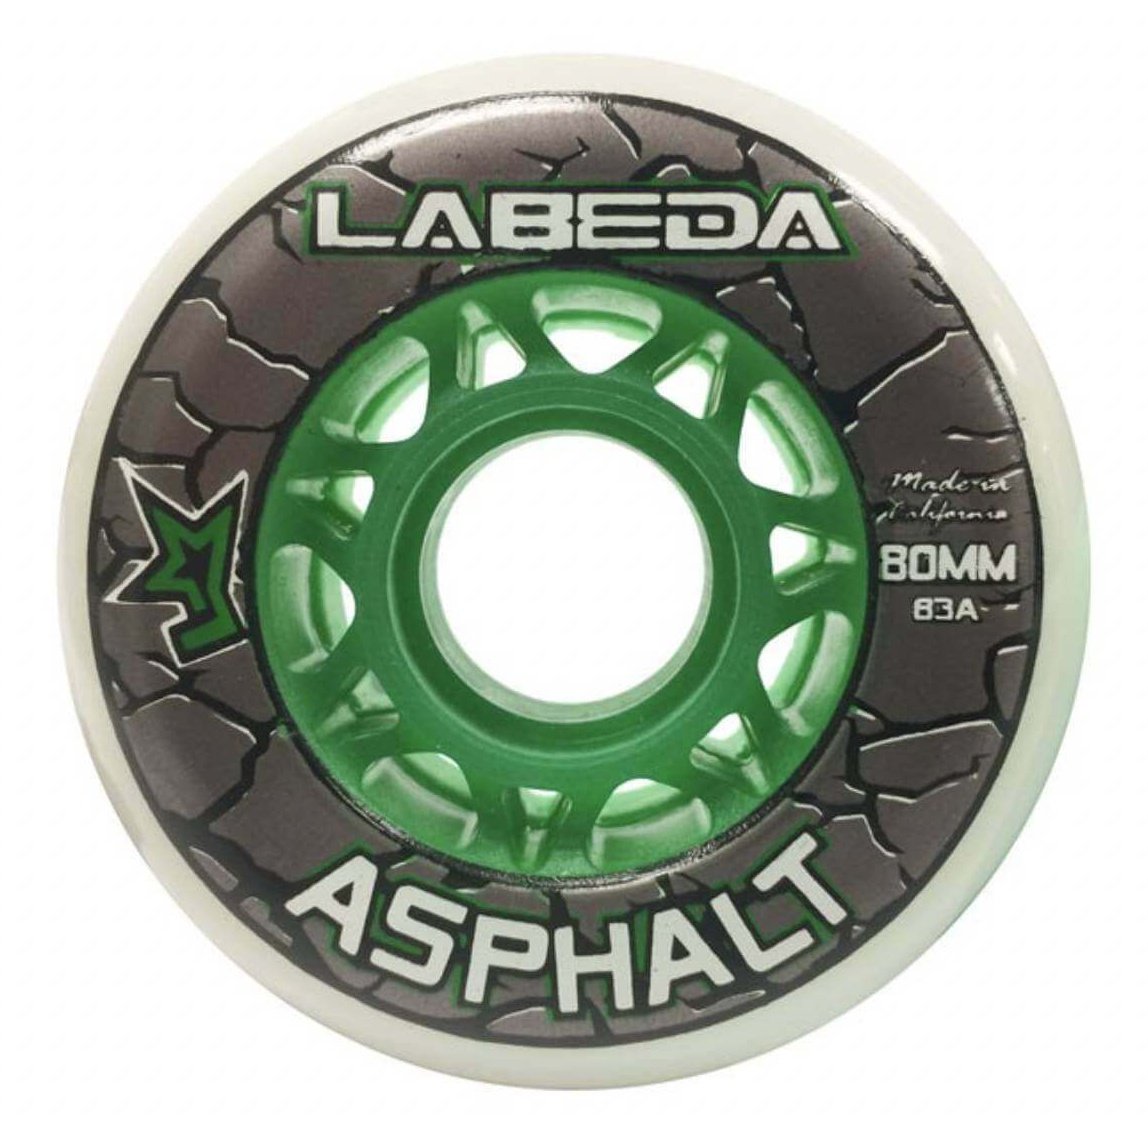 Labeda Asphalt Natural / Green Wheel (Single) - 80MM